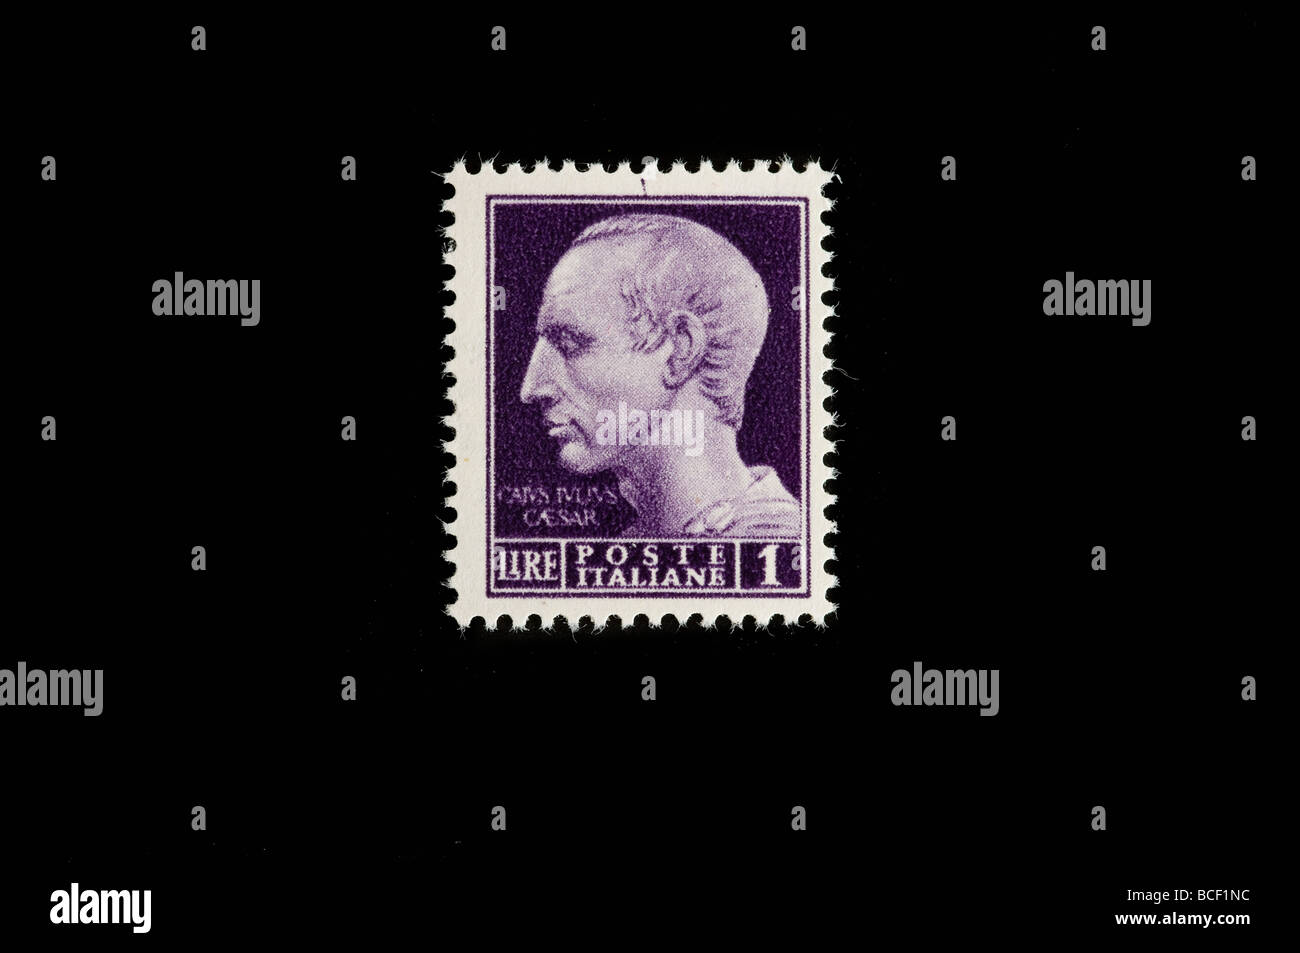 Giulio Cesare in a 1945 italian stamp Stock Photo